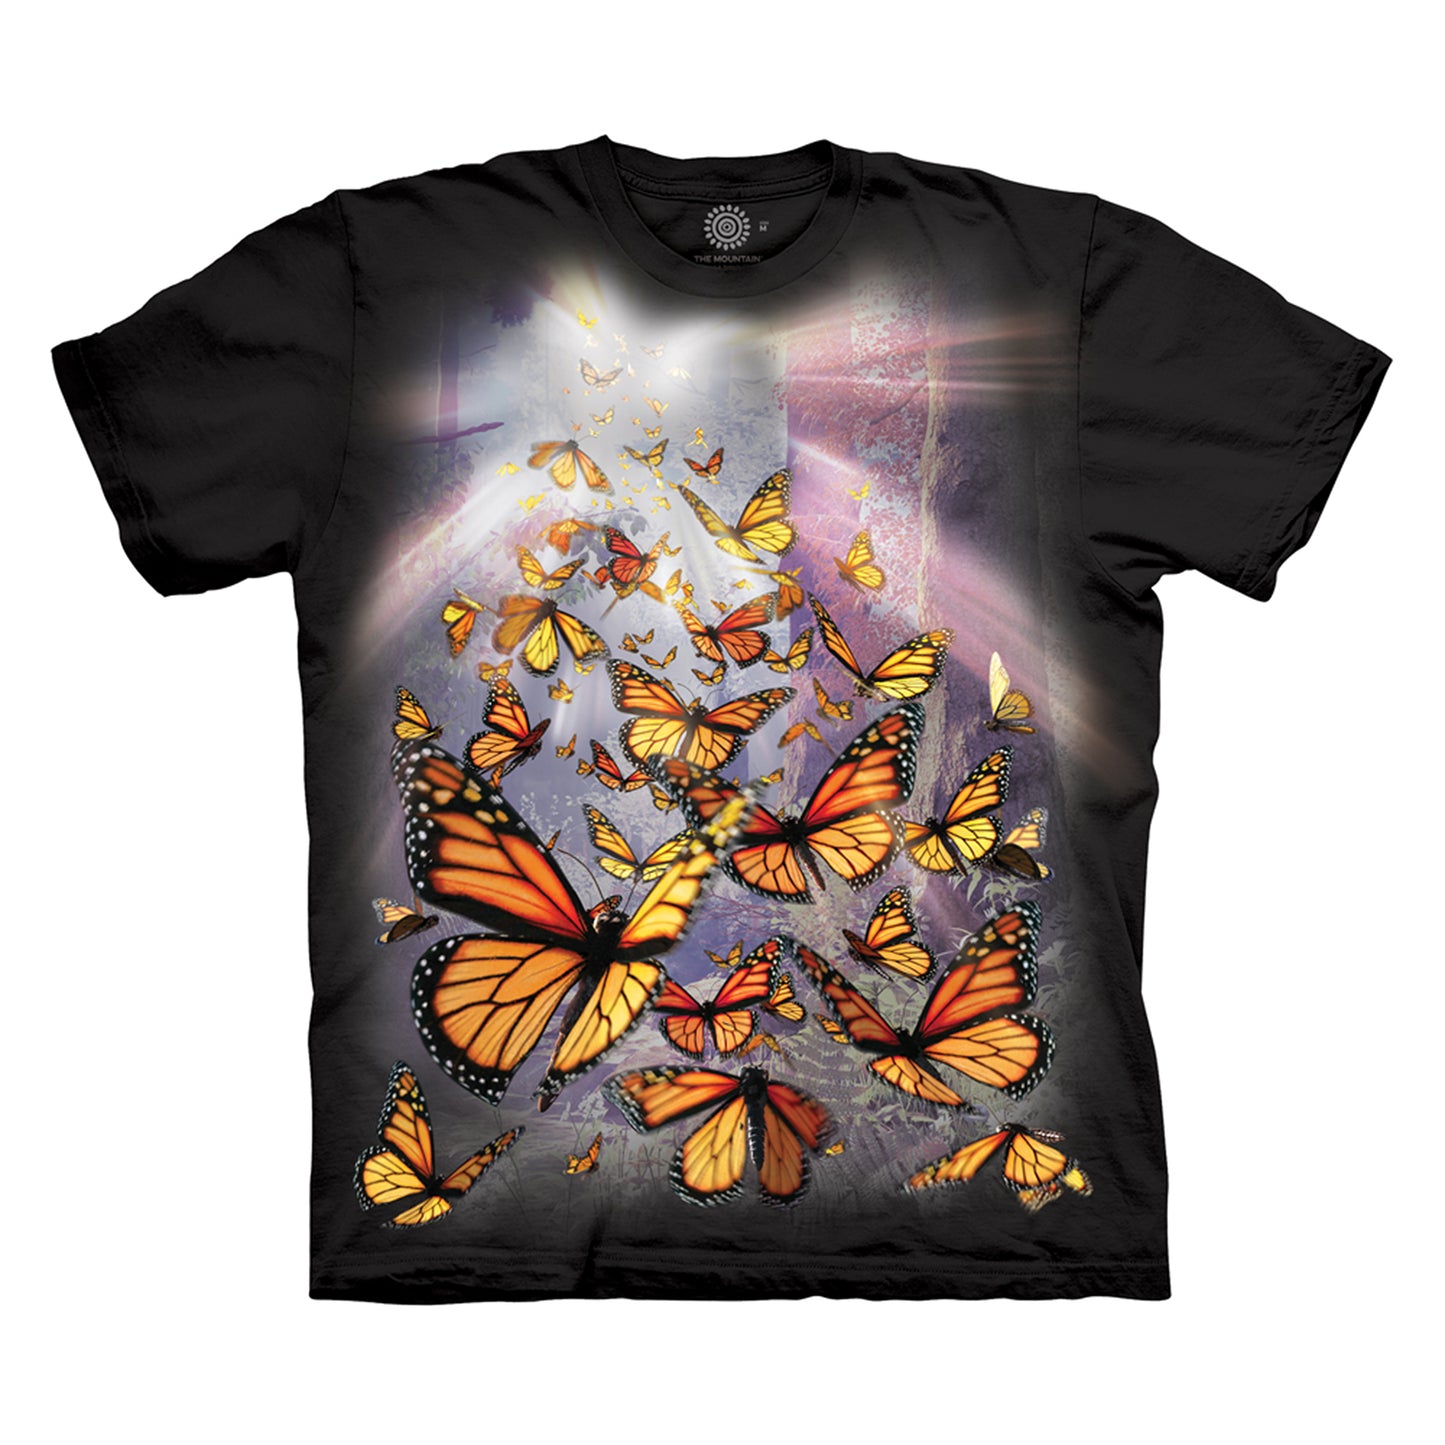 The Mountain Men's Monarch Butterflies T-Shirt